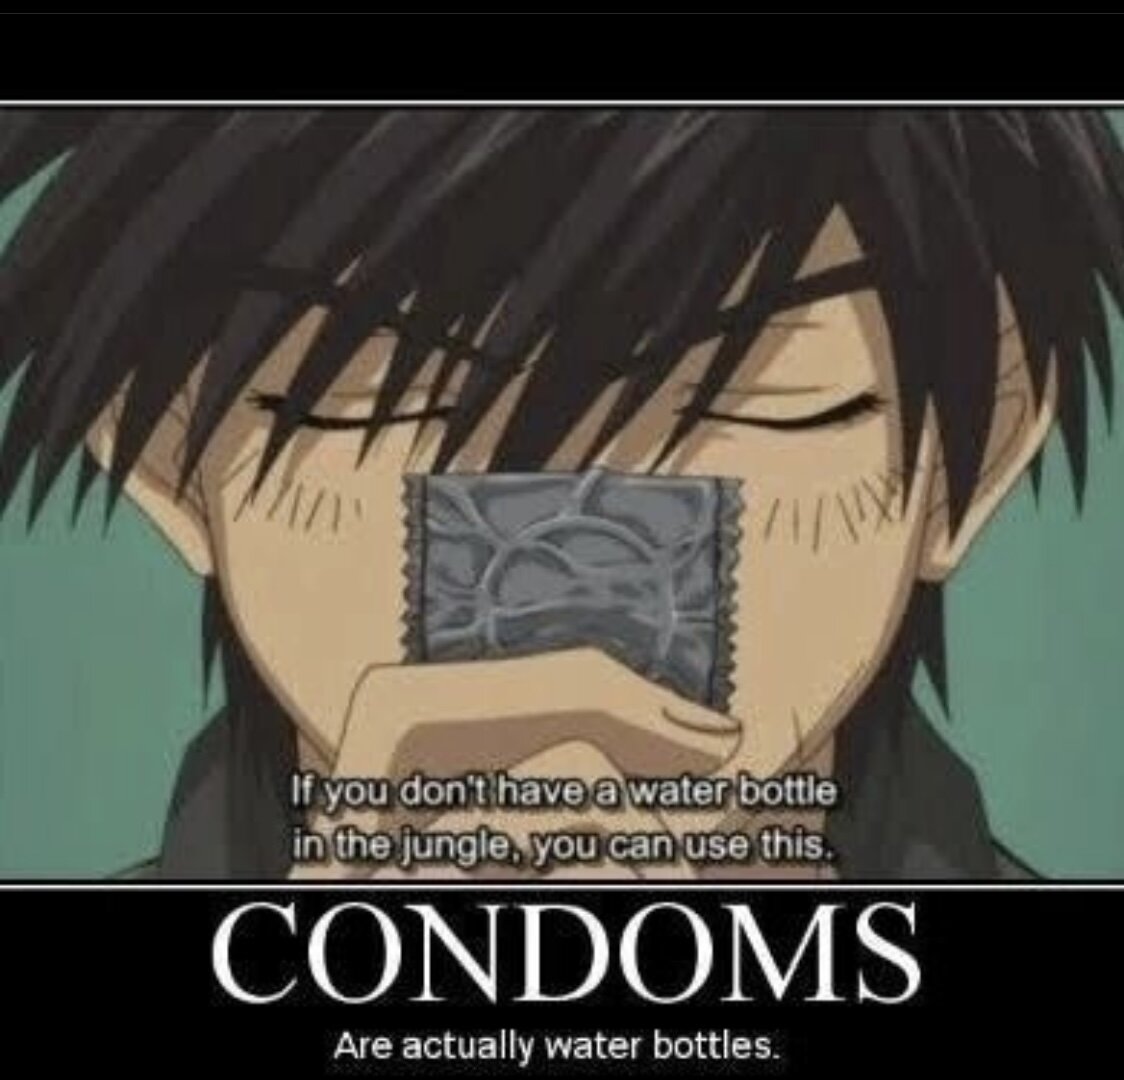 ㅎㅂ) 콘돔의 원래 사용처